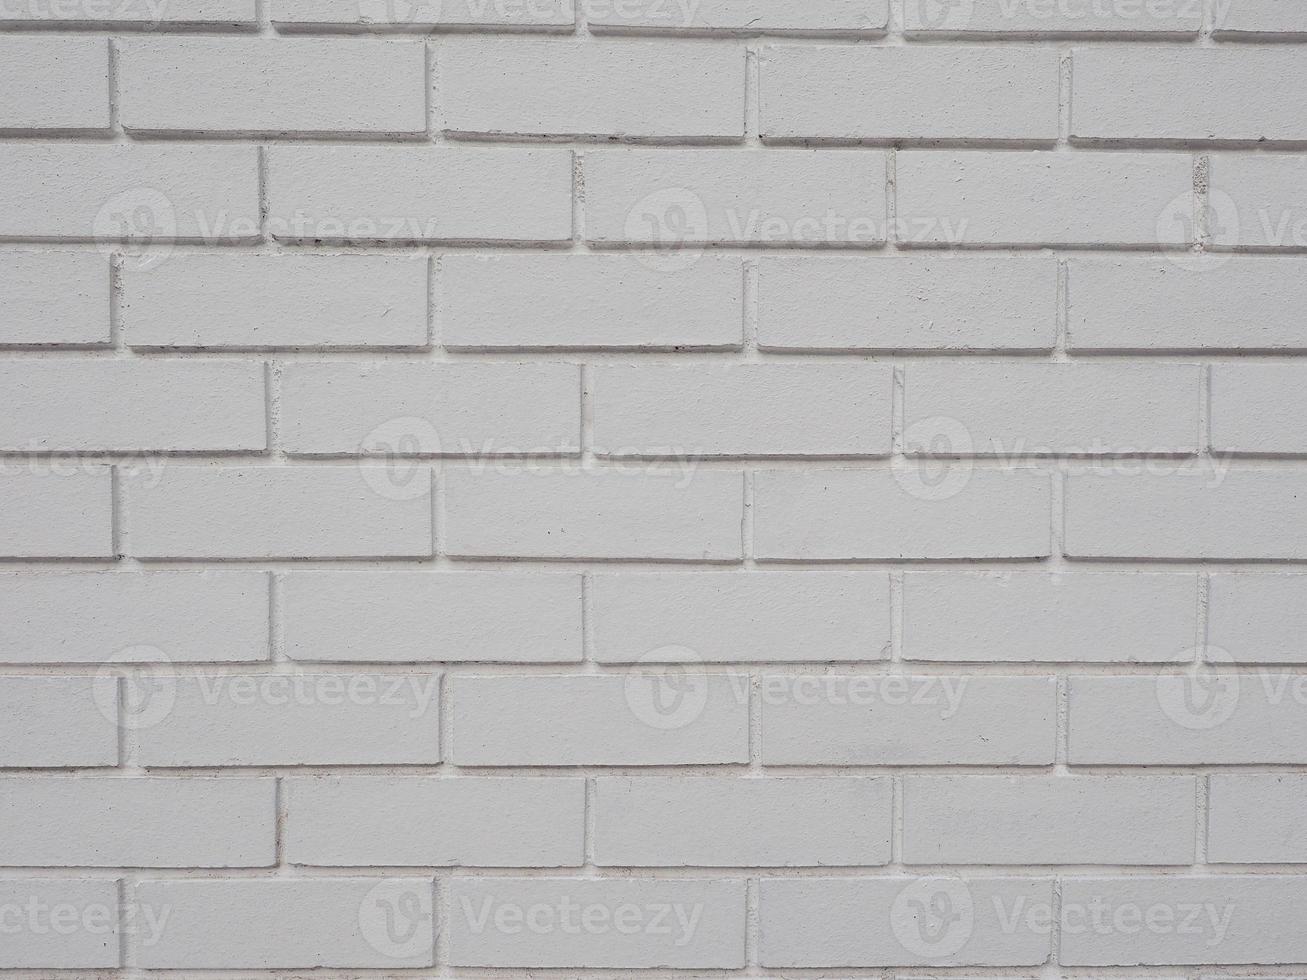 Brick wall background photo